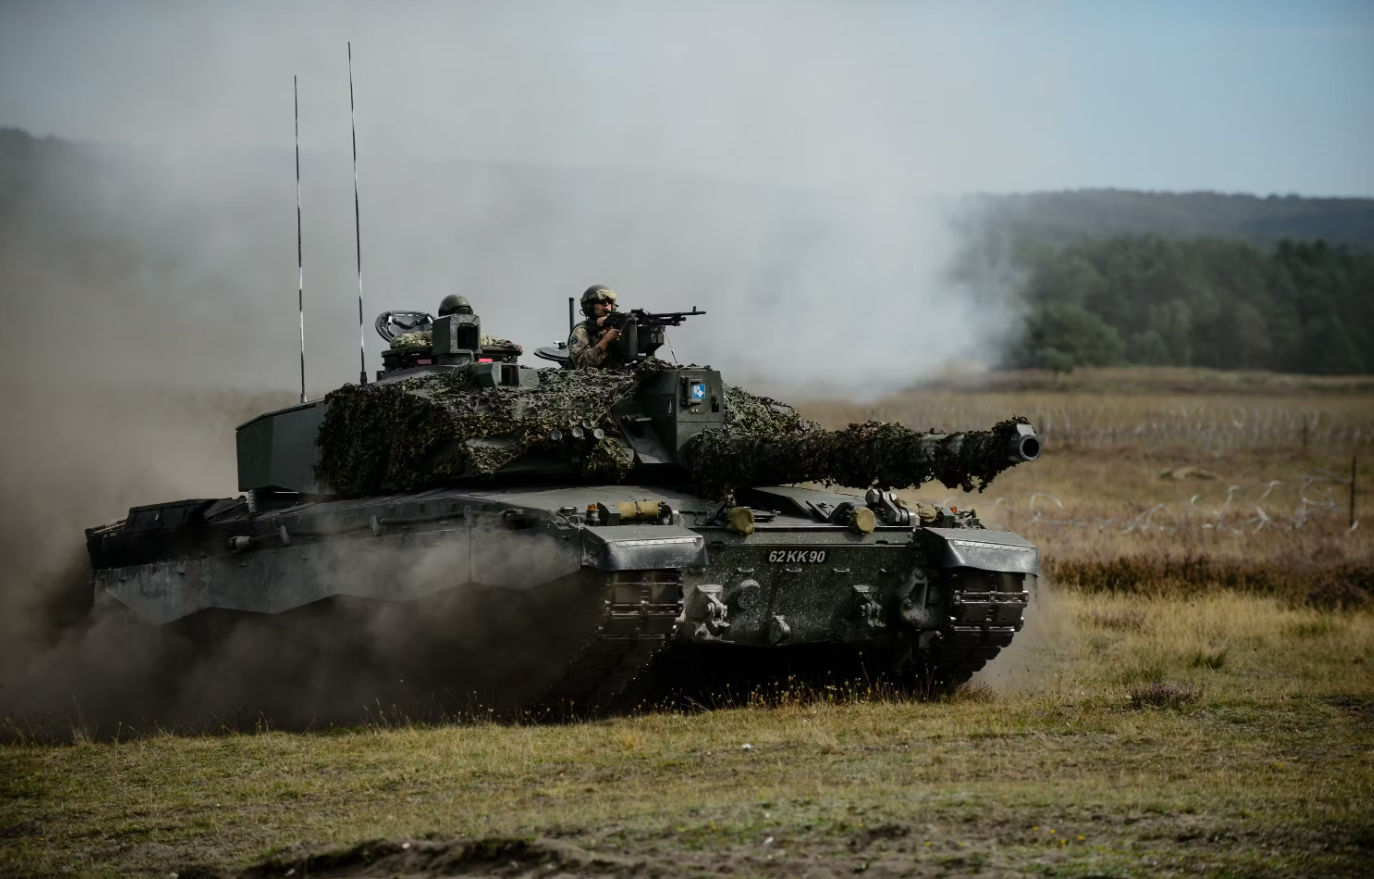 Großbritannien schickt Tausende von Challenger-Panzergeschossen in die Ukraine, darunter auch Munition mit abgereichertem Uran